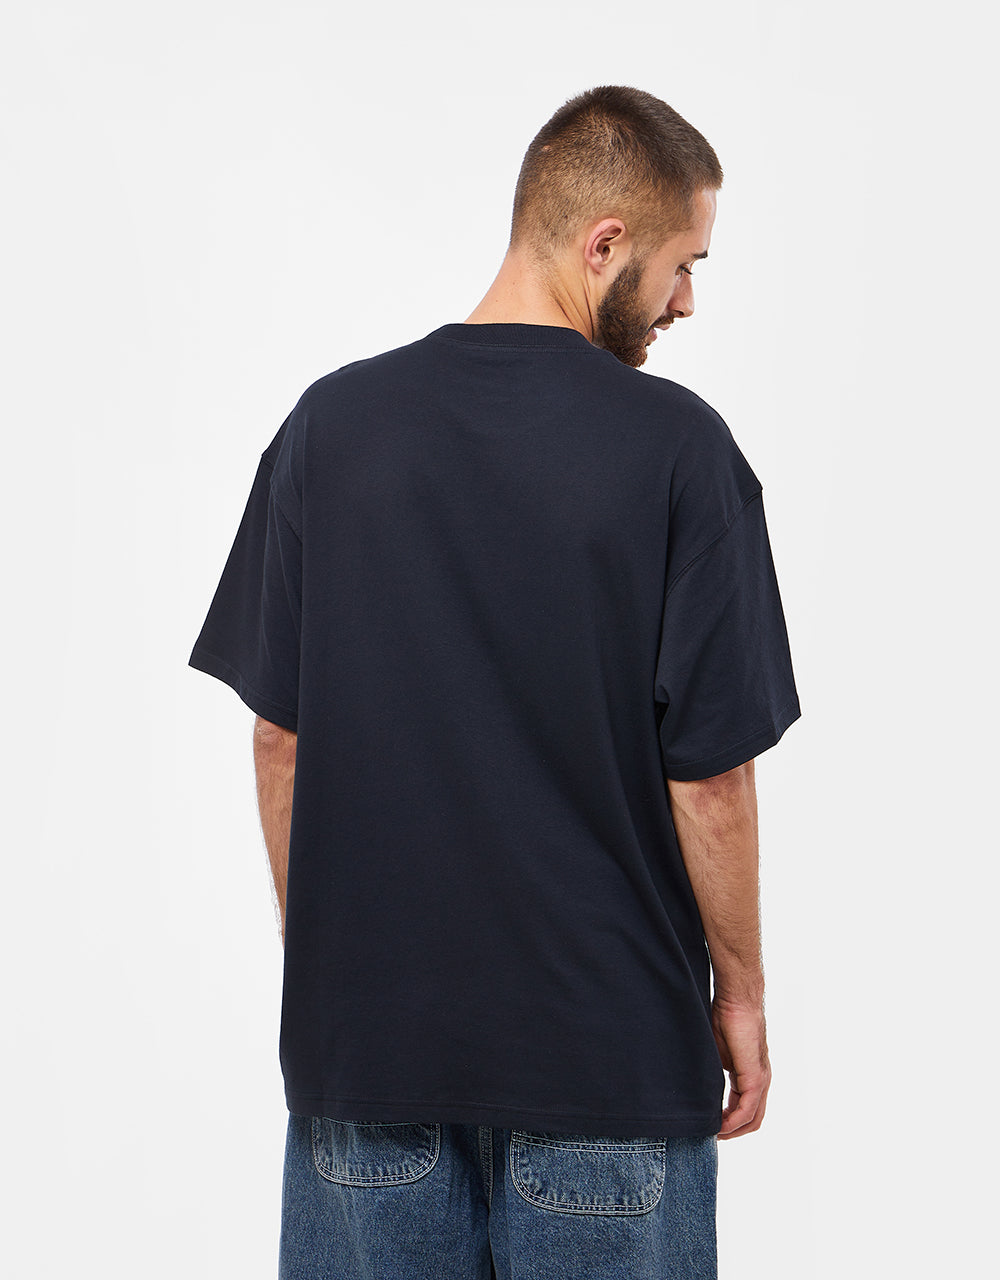 Nike SB Stencil T-Shirt - Black